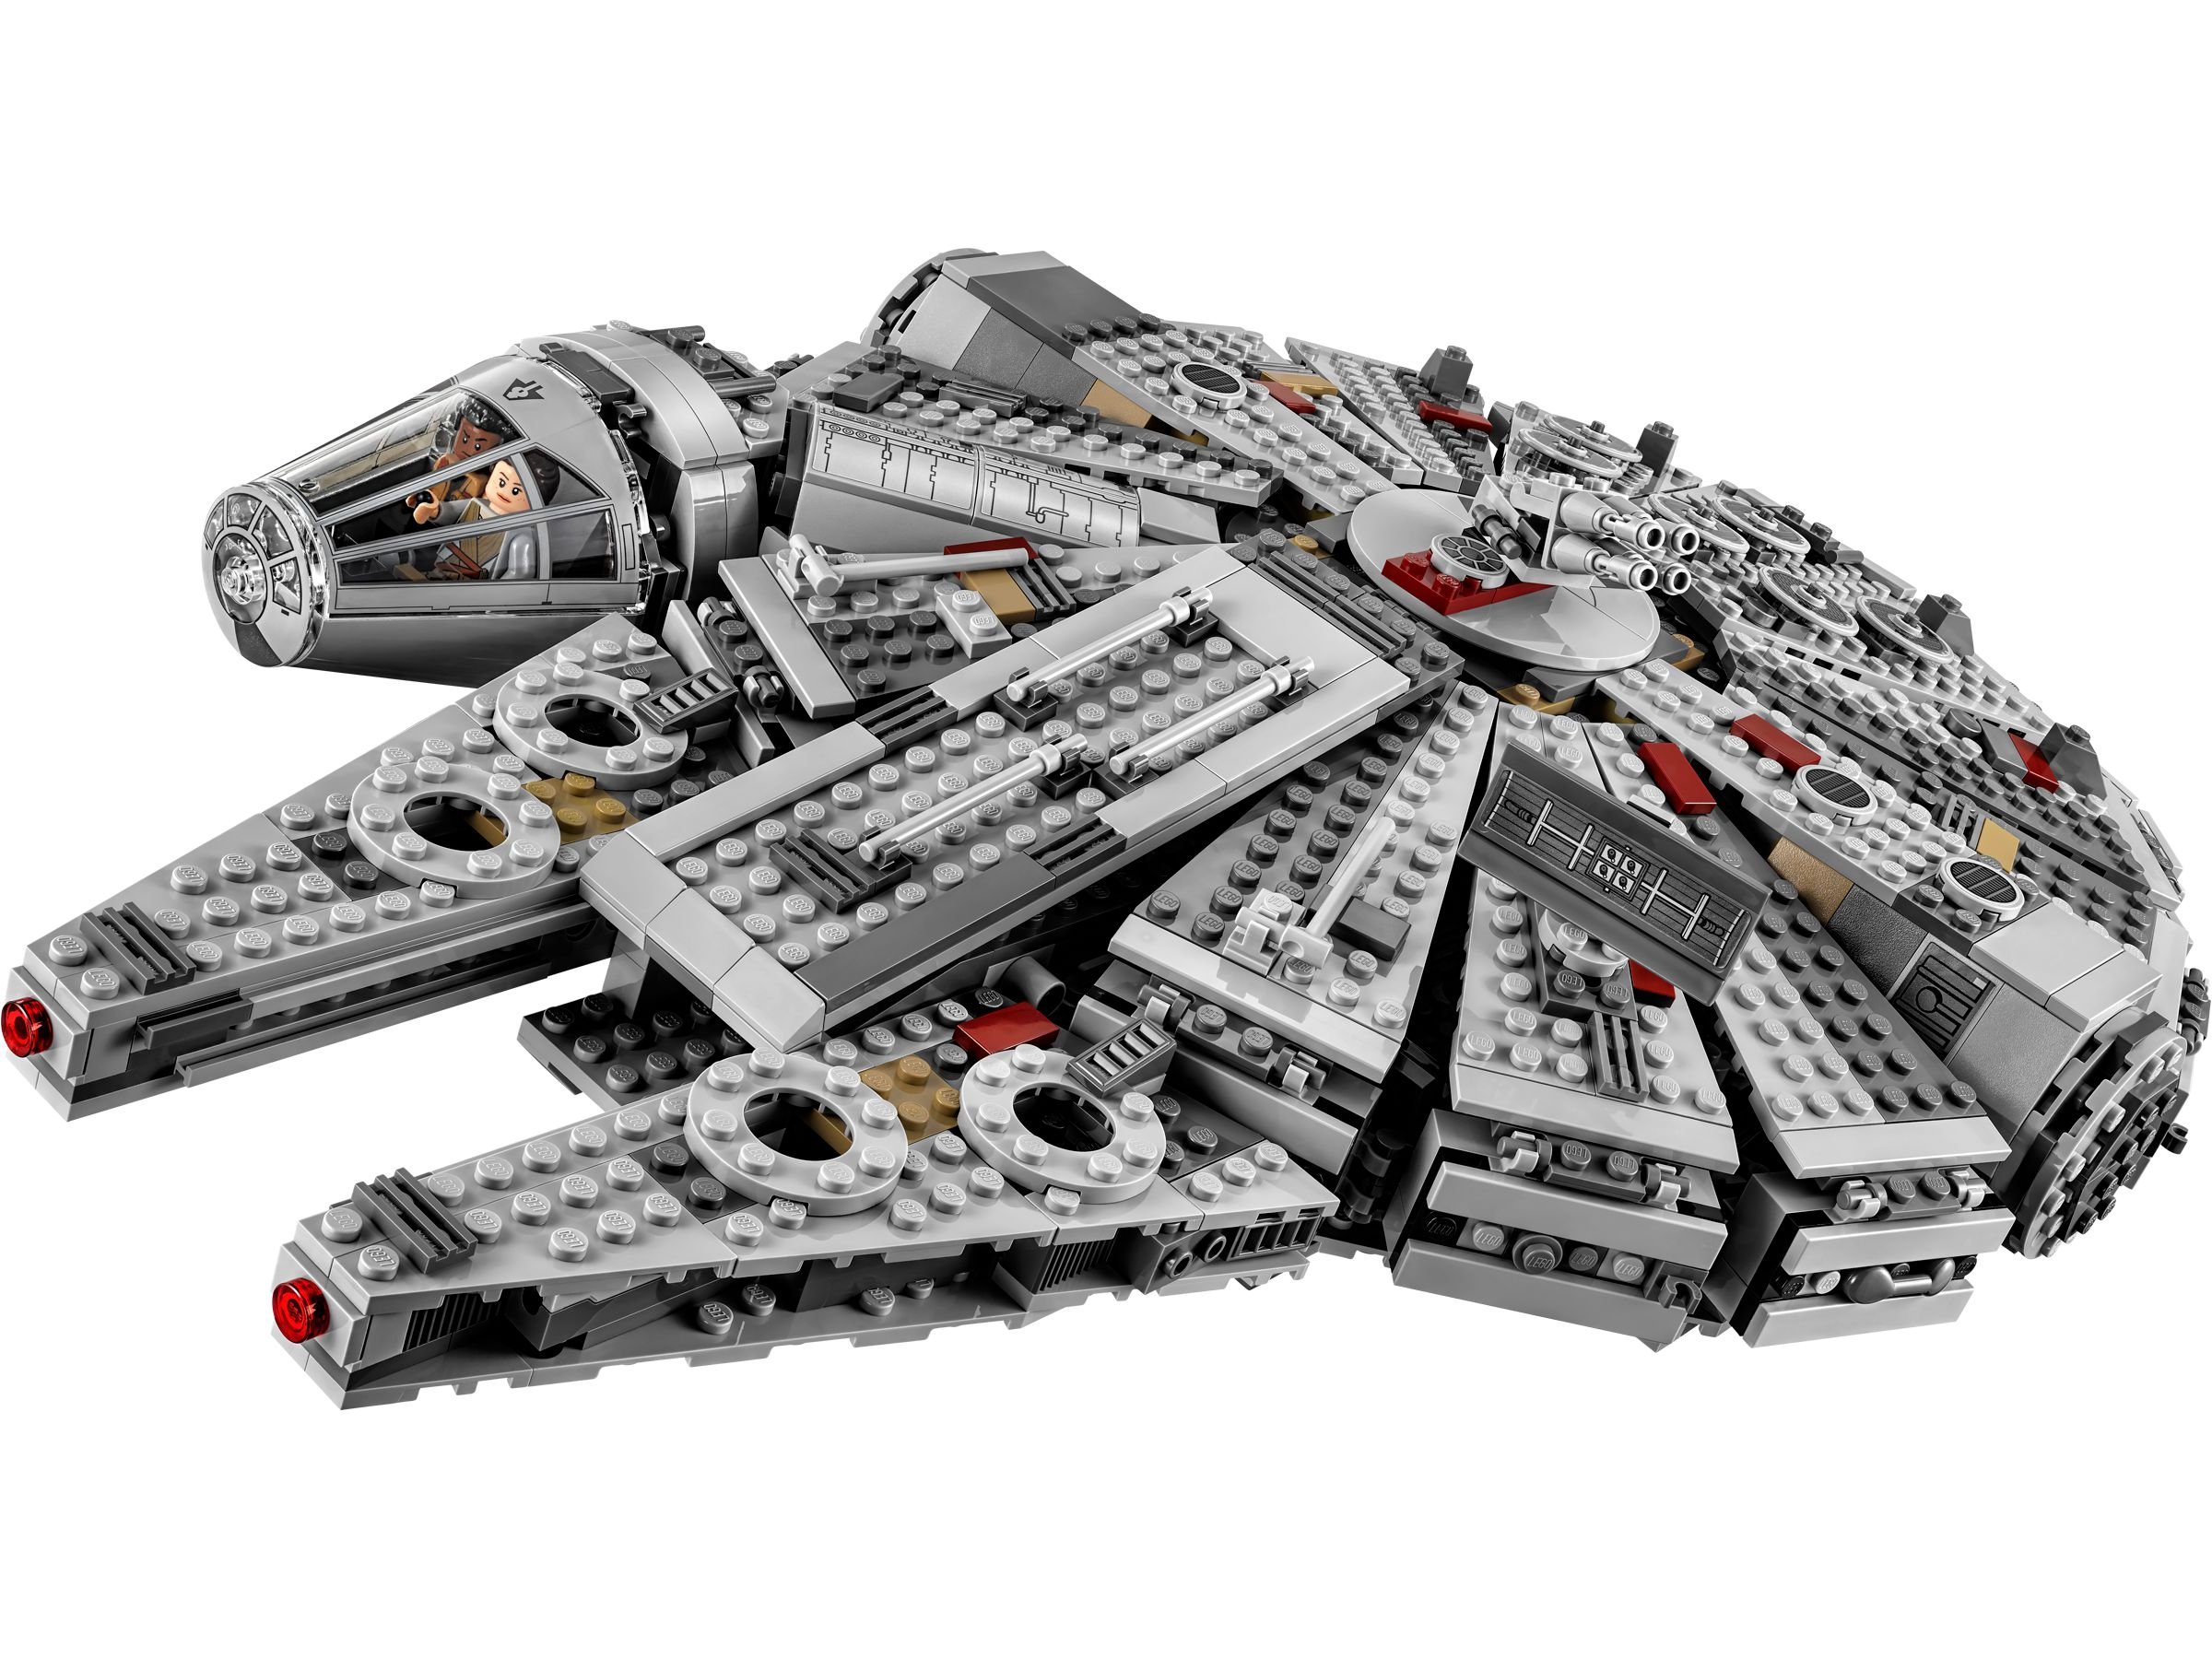 LEGO Star Wars 75105 Millennium Falcon™ LEGO_75105_alt2.jpg